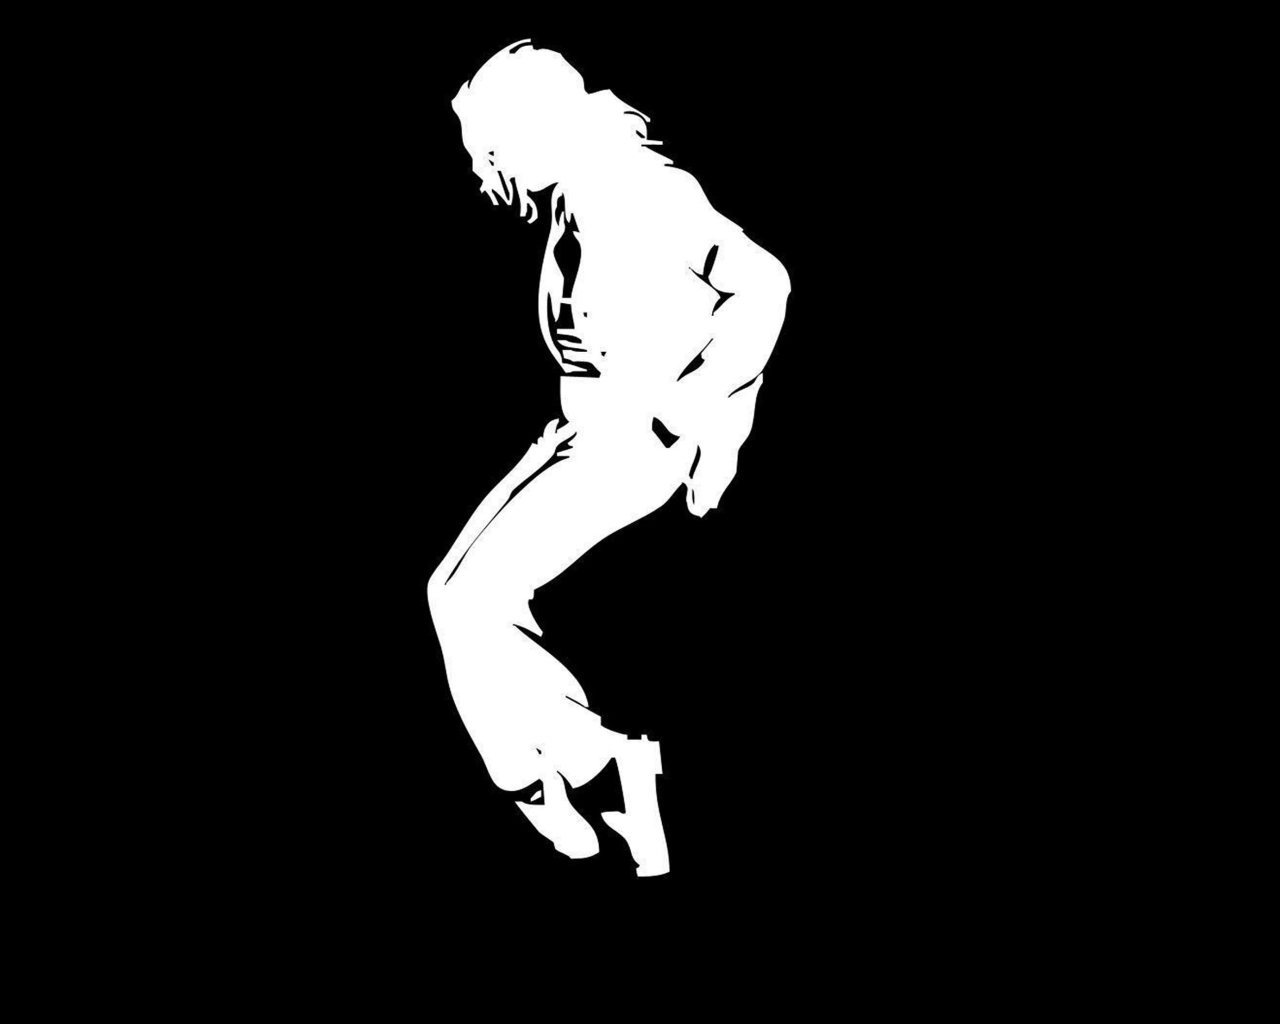 Michael Jackson wallpaper 1280x1024